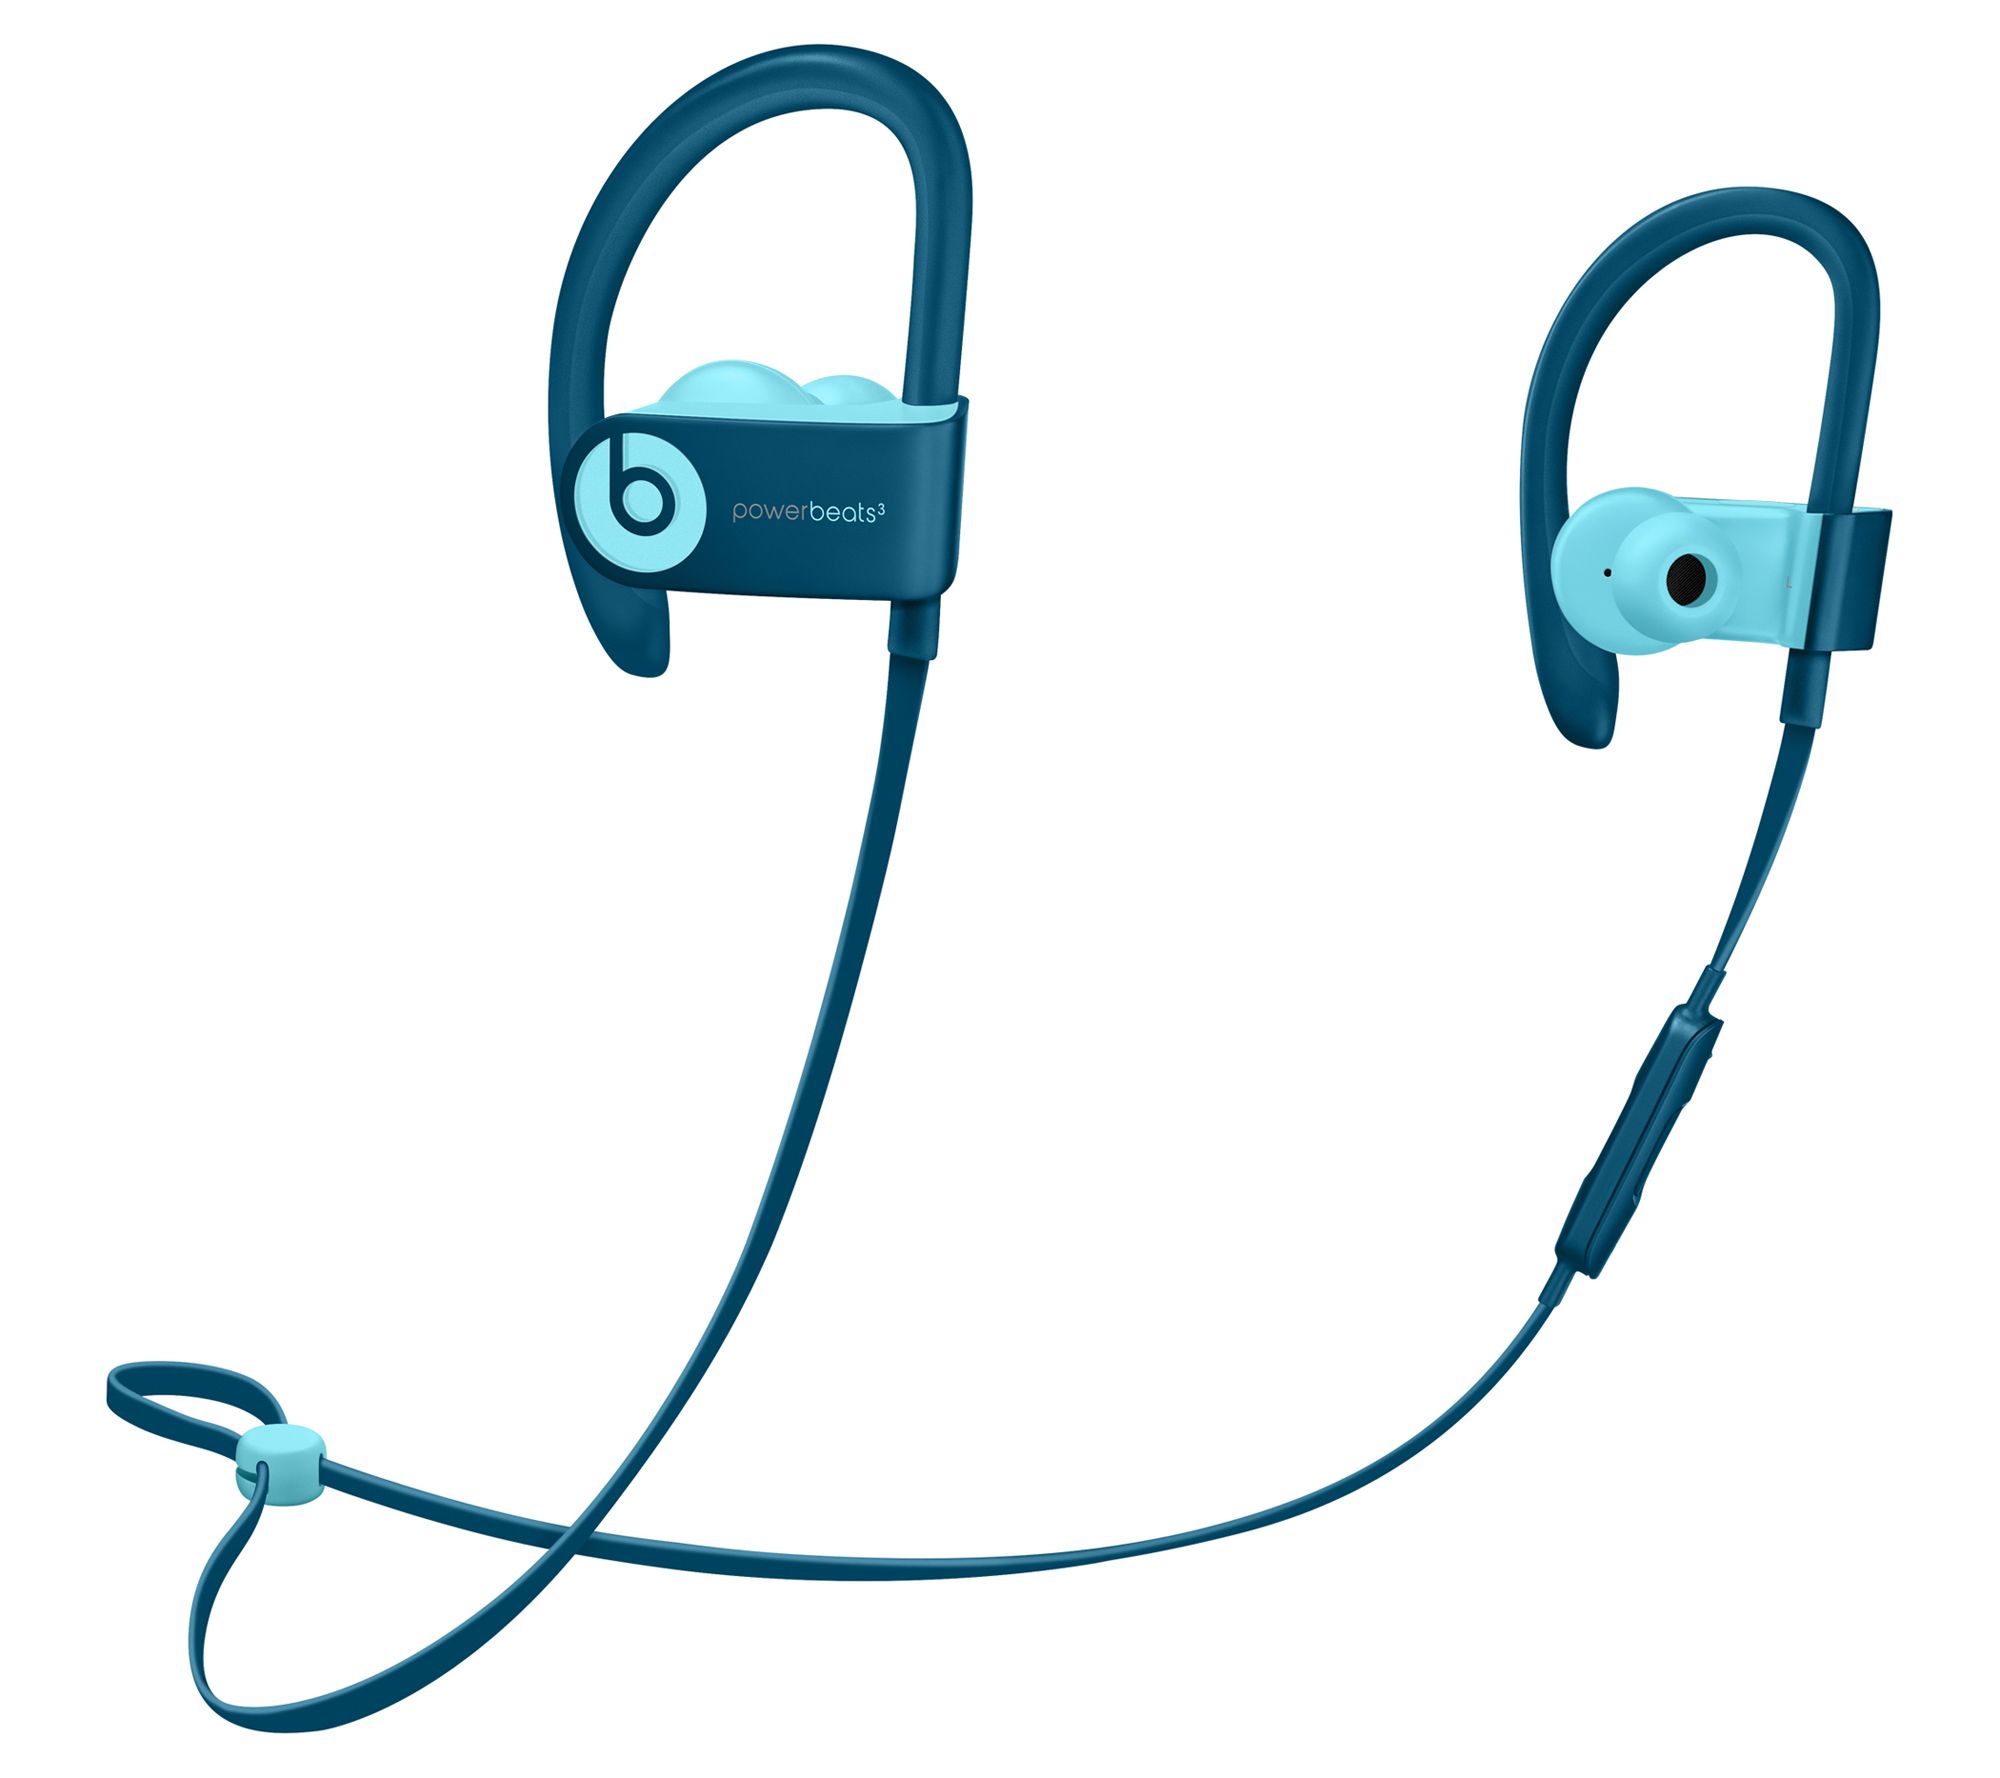 powerbeats3 wireless earphones target